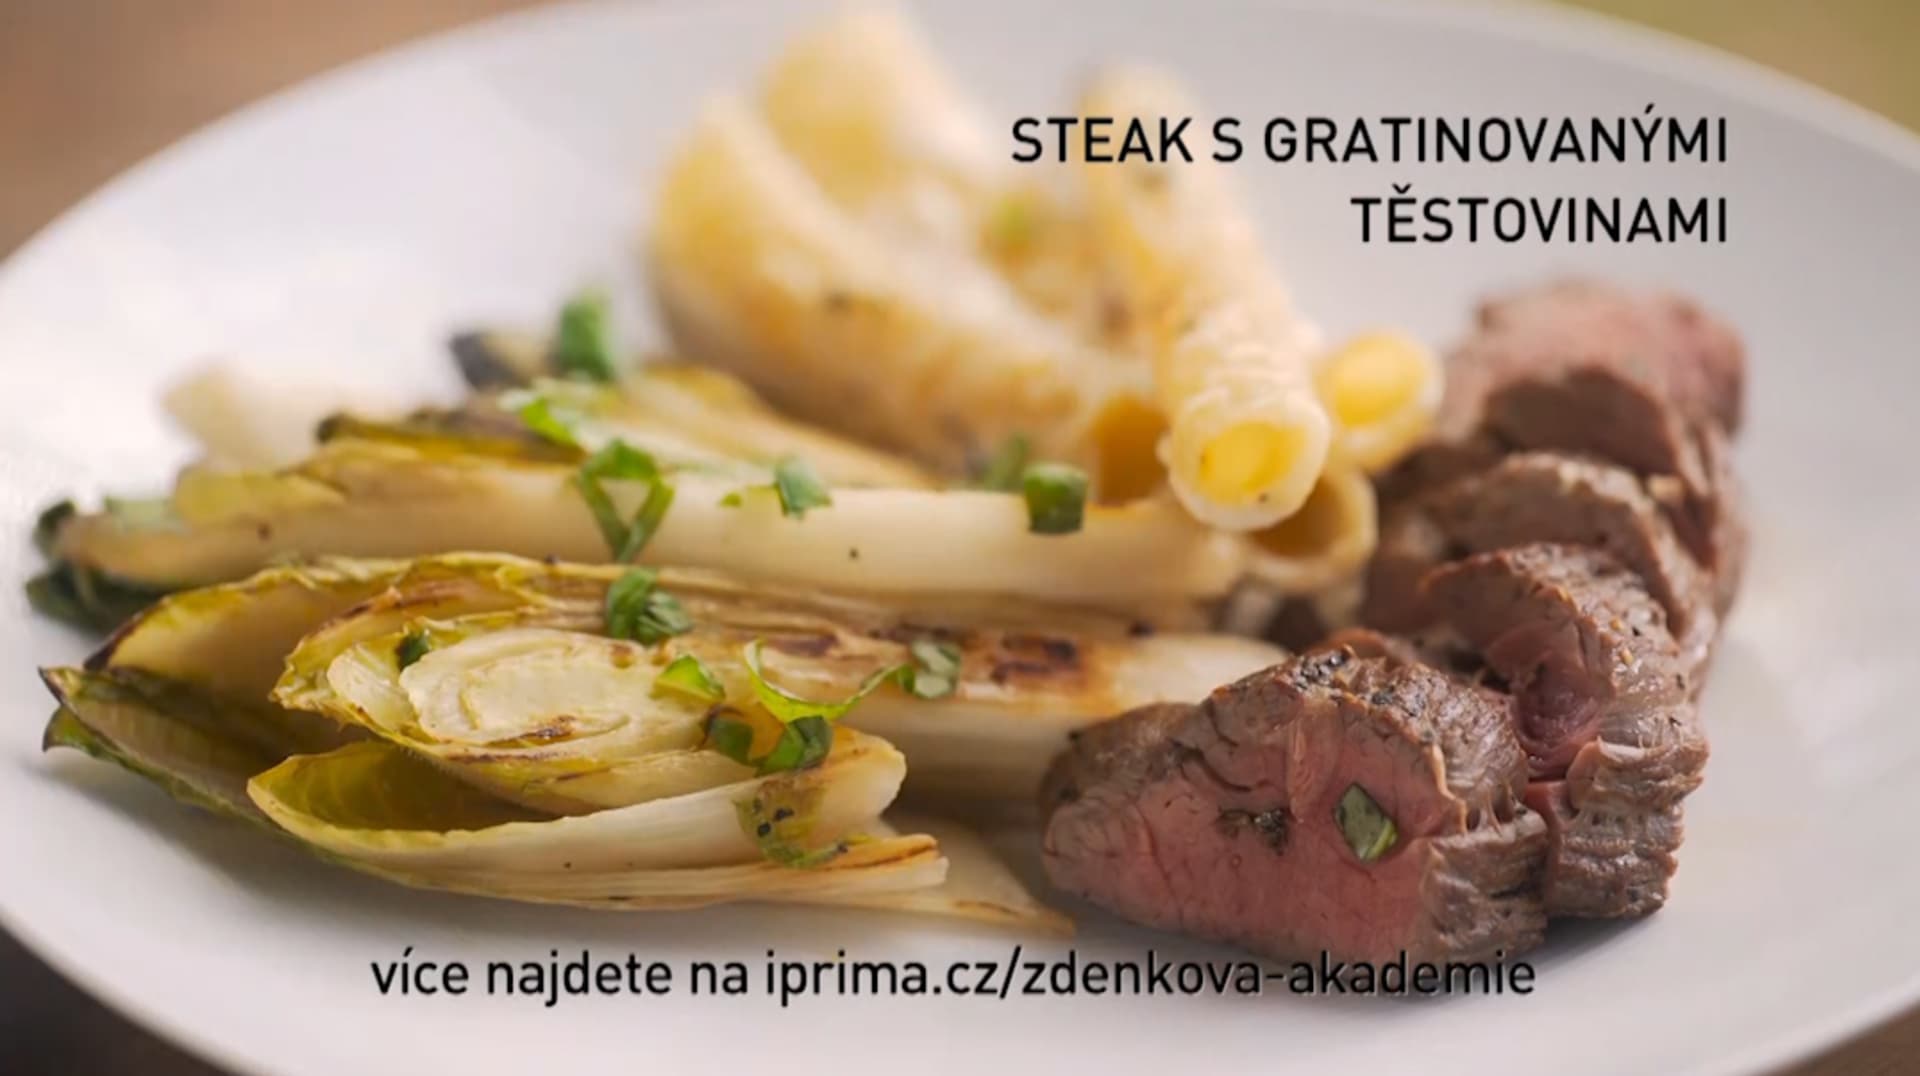 Steak s gratinovanými těstovinami